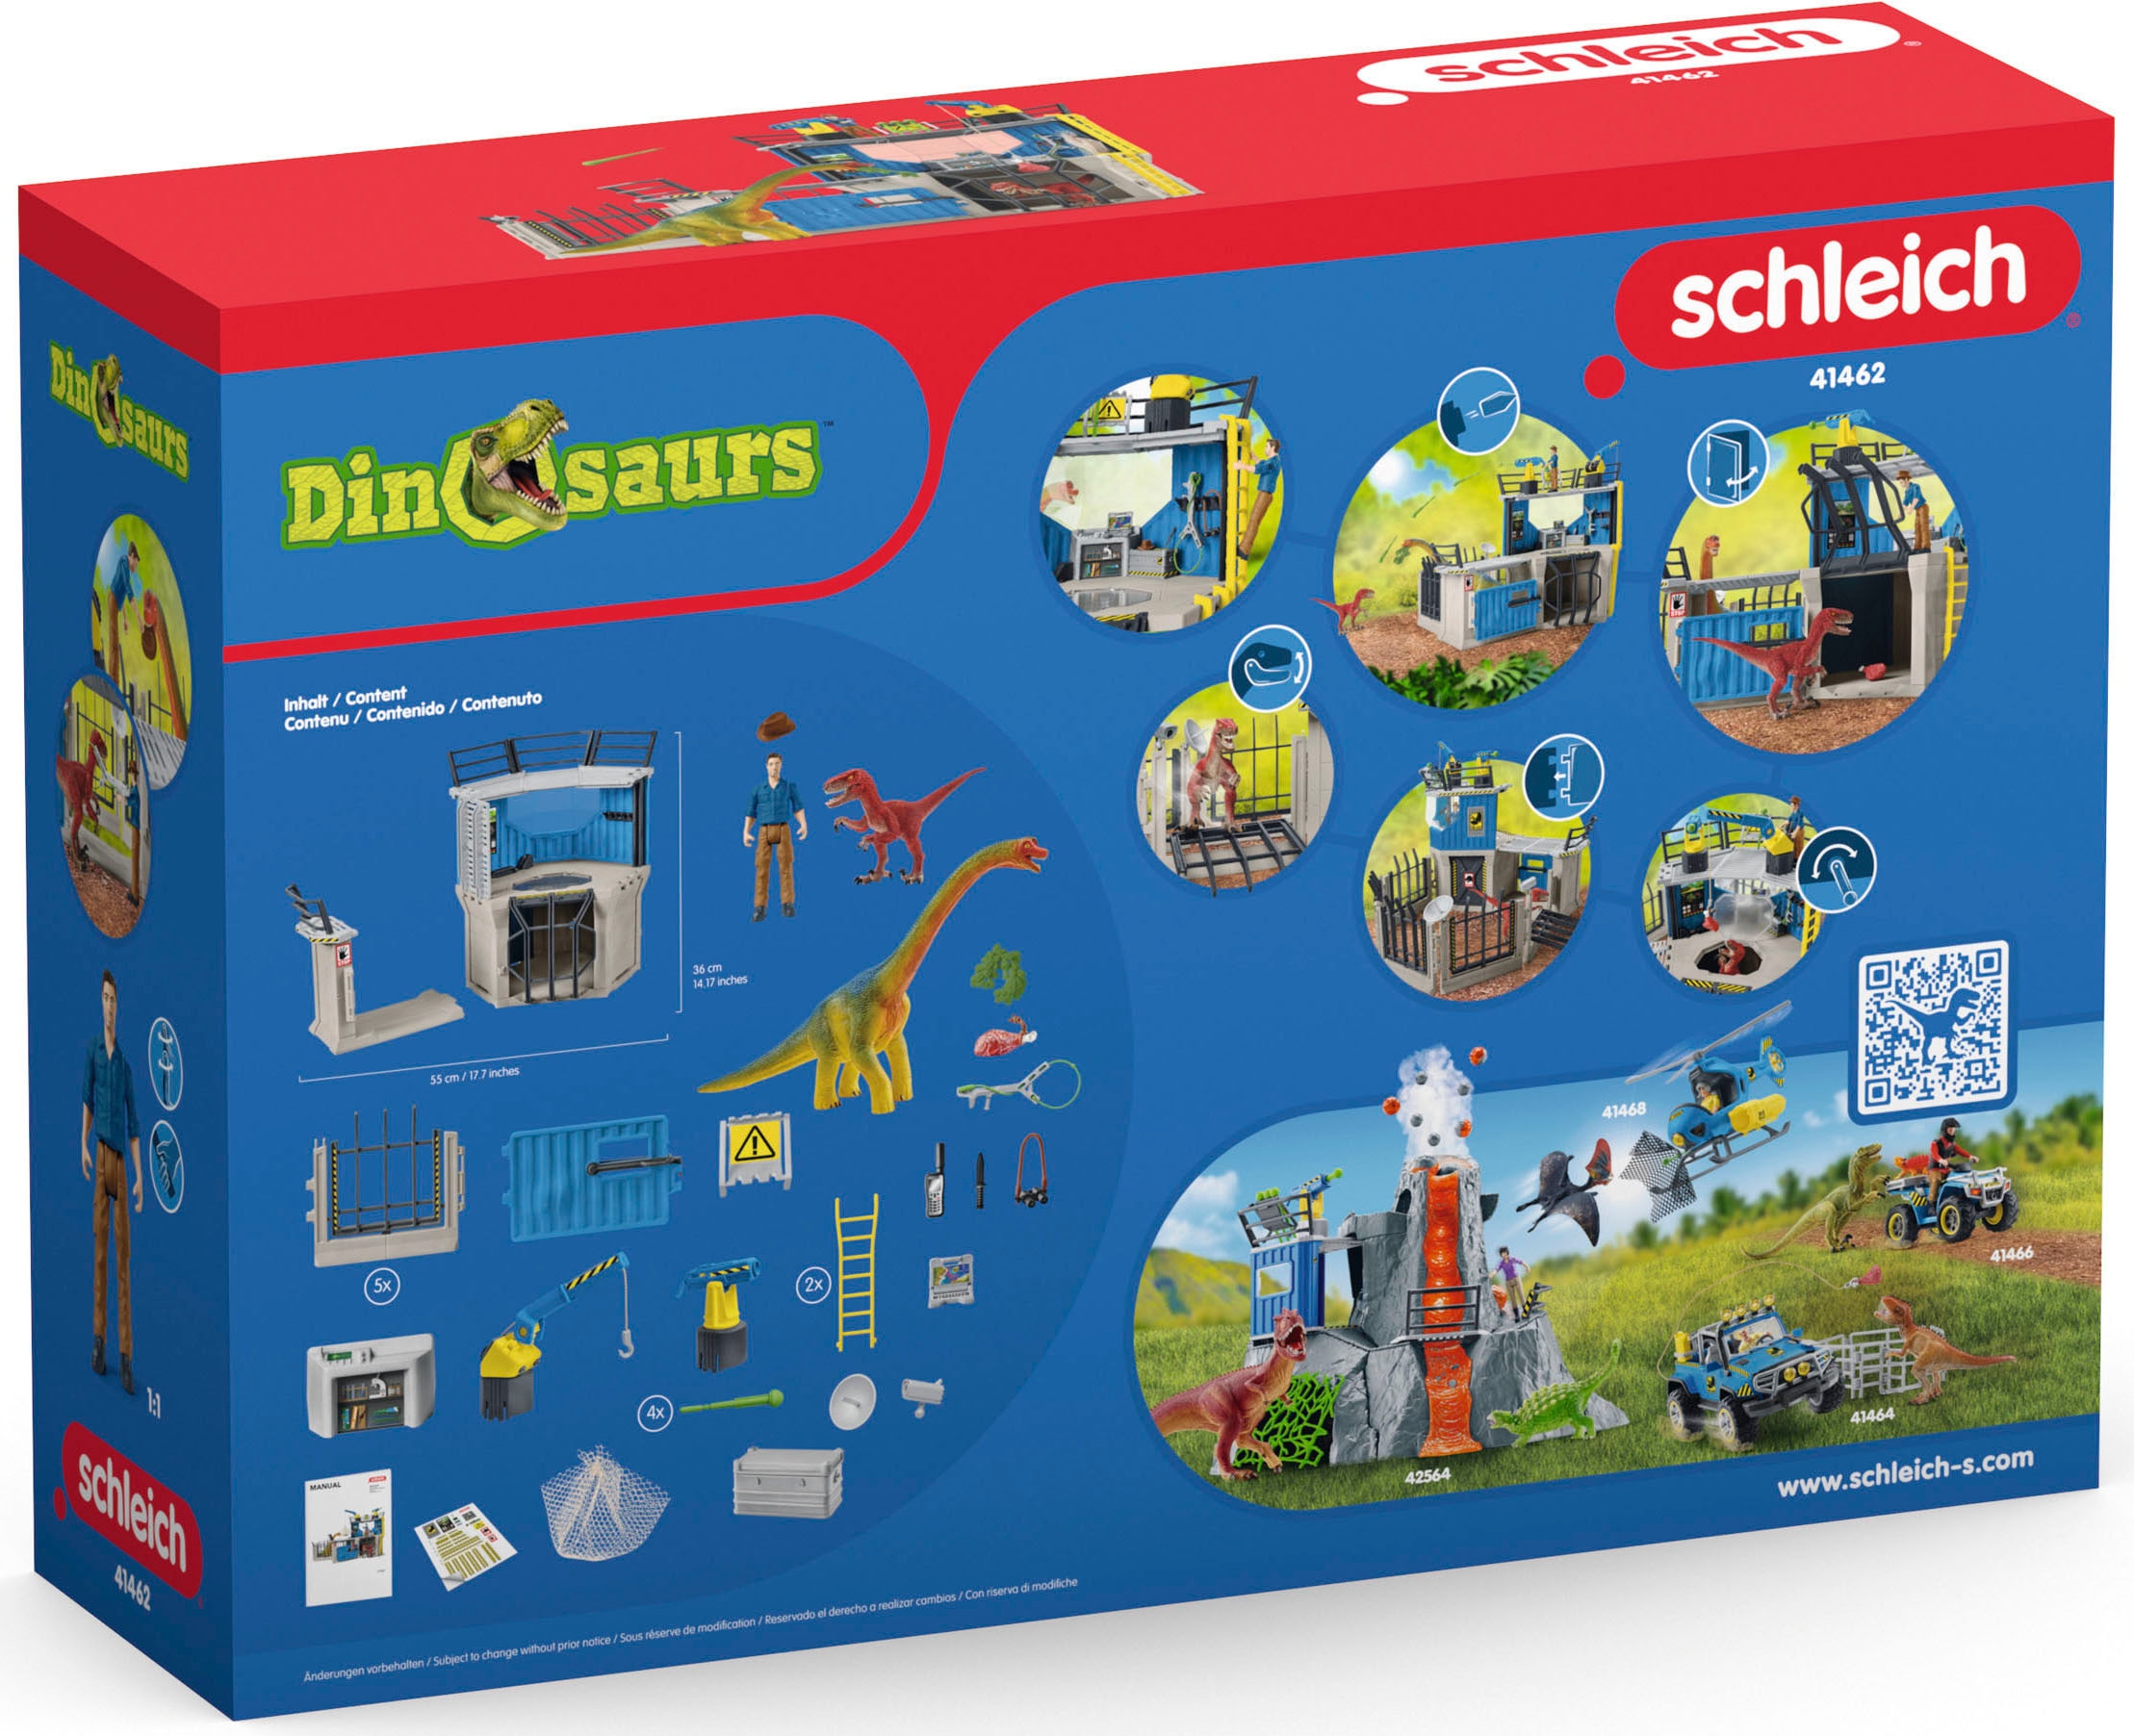 Schleich® Spielwelt »DINOSAURS, Große Dino-Forschungsstation (41462)«, (Set), ; Made in Germany